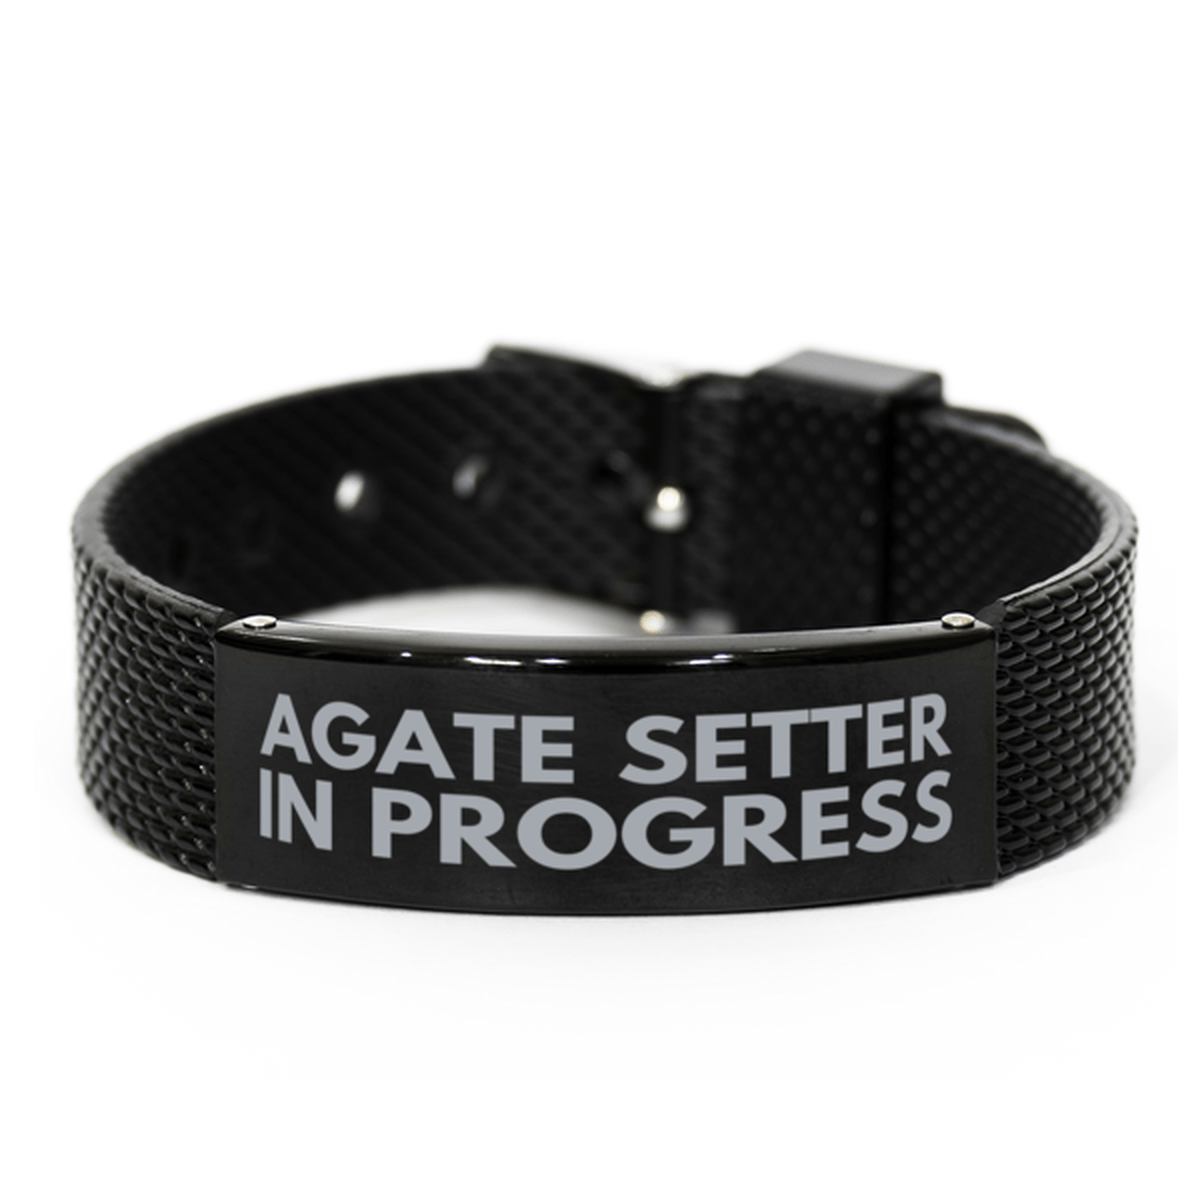 Inspirational Agate Setter Black Shark Mesh Bracelet, Agate Setter In Progress, Best Graduation Gifts for Students